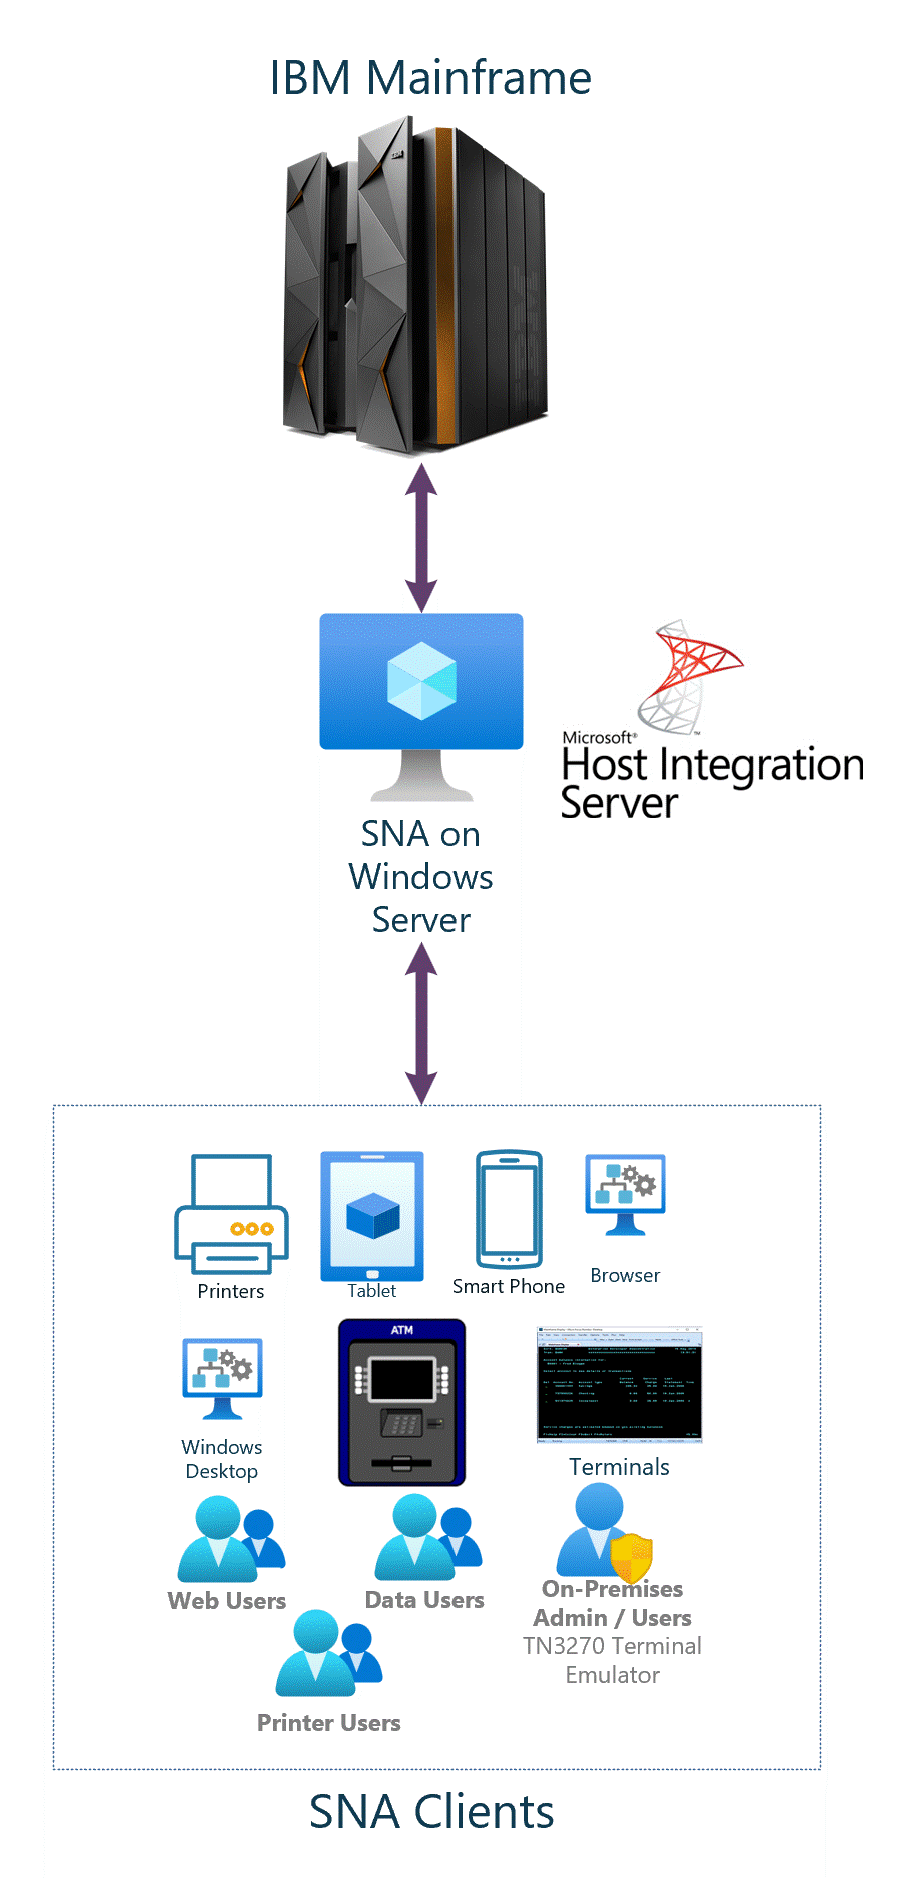 Immagine che mostra una rete host integration server connessa al mainframe IBM.